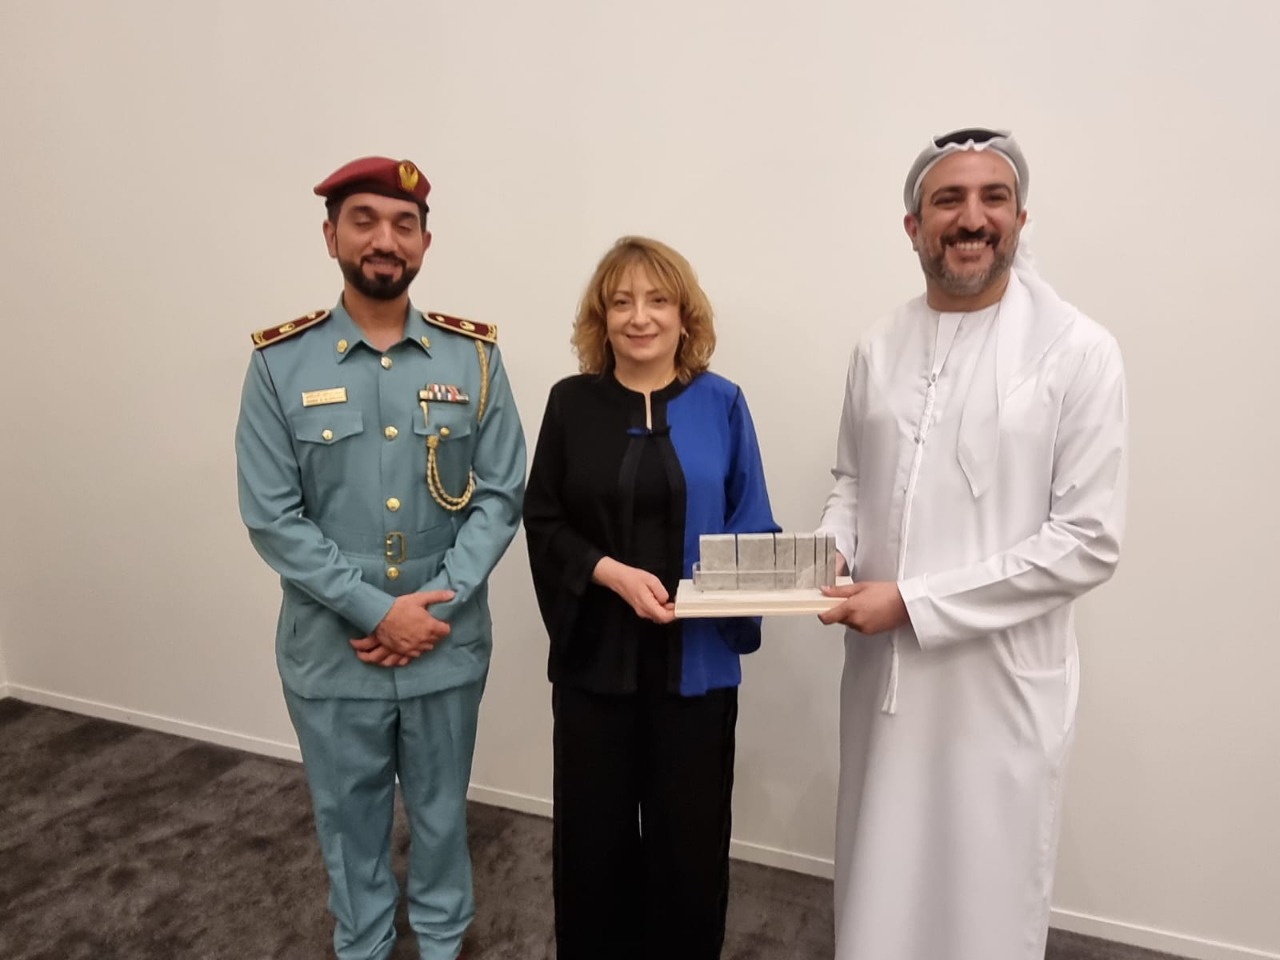 الاستاذة لمياء العبدلاوي بجامعة محمد الخامس تفوز بجائزة “ووتر فولز العالمية” المعنية بالتعليم الصحي، ويعتبر المغرب البلد العربي الوحيد المتوج بهذه الجائزة.